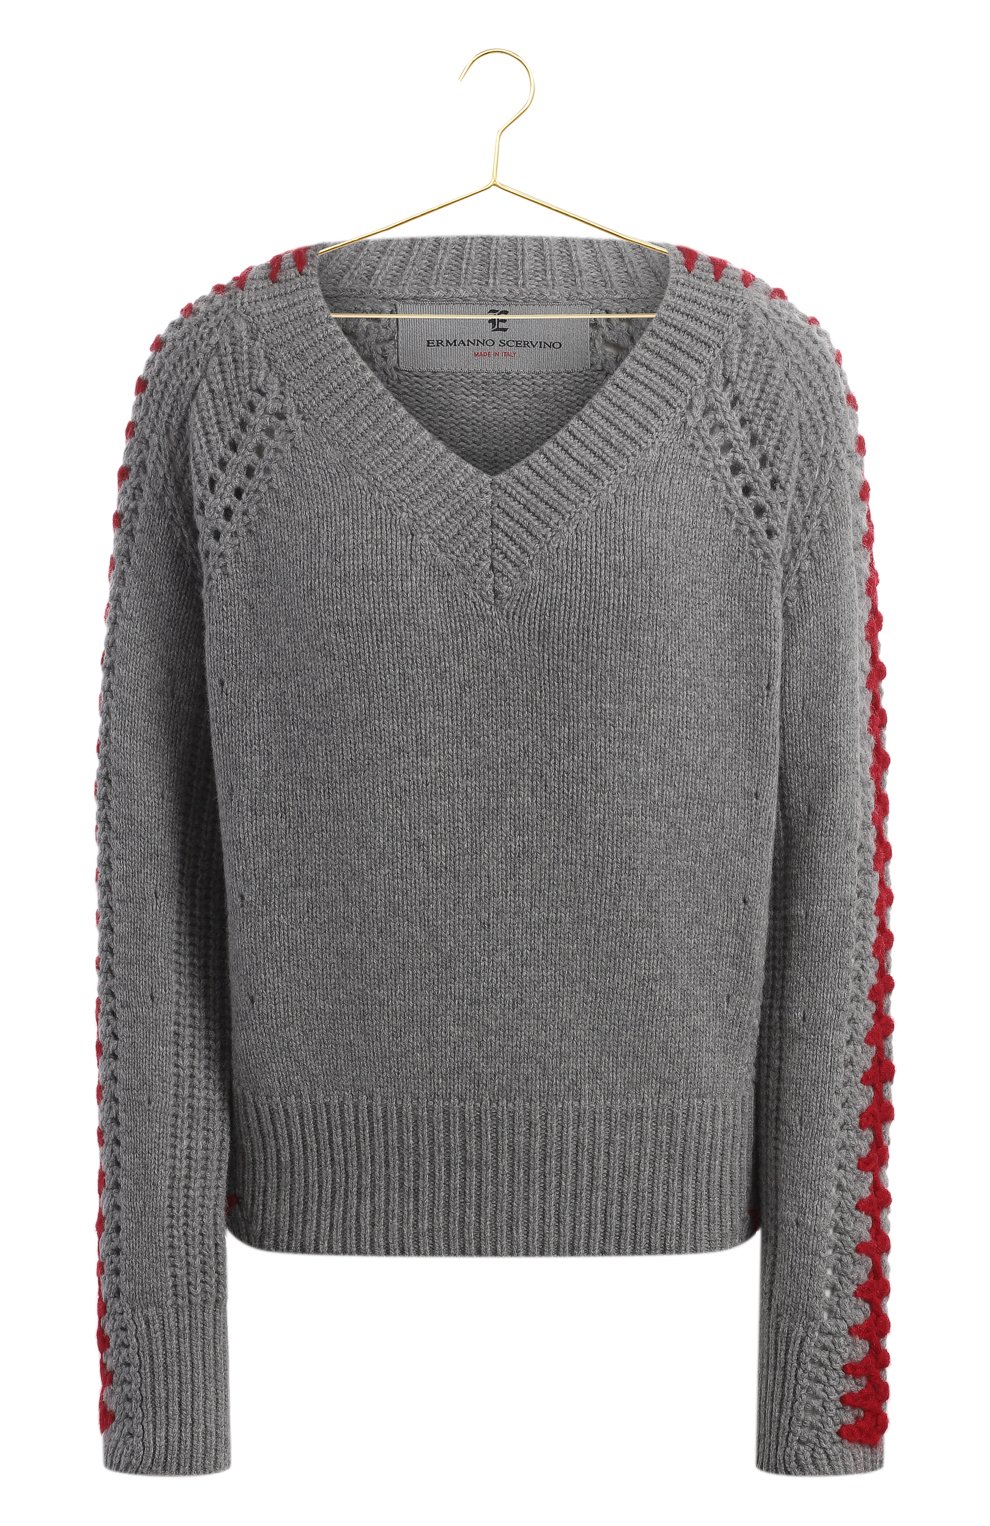 Пуловер из шерсти и кашемира | Ermanno Scervino | Серый - 1